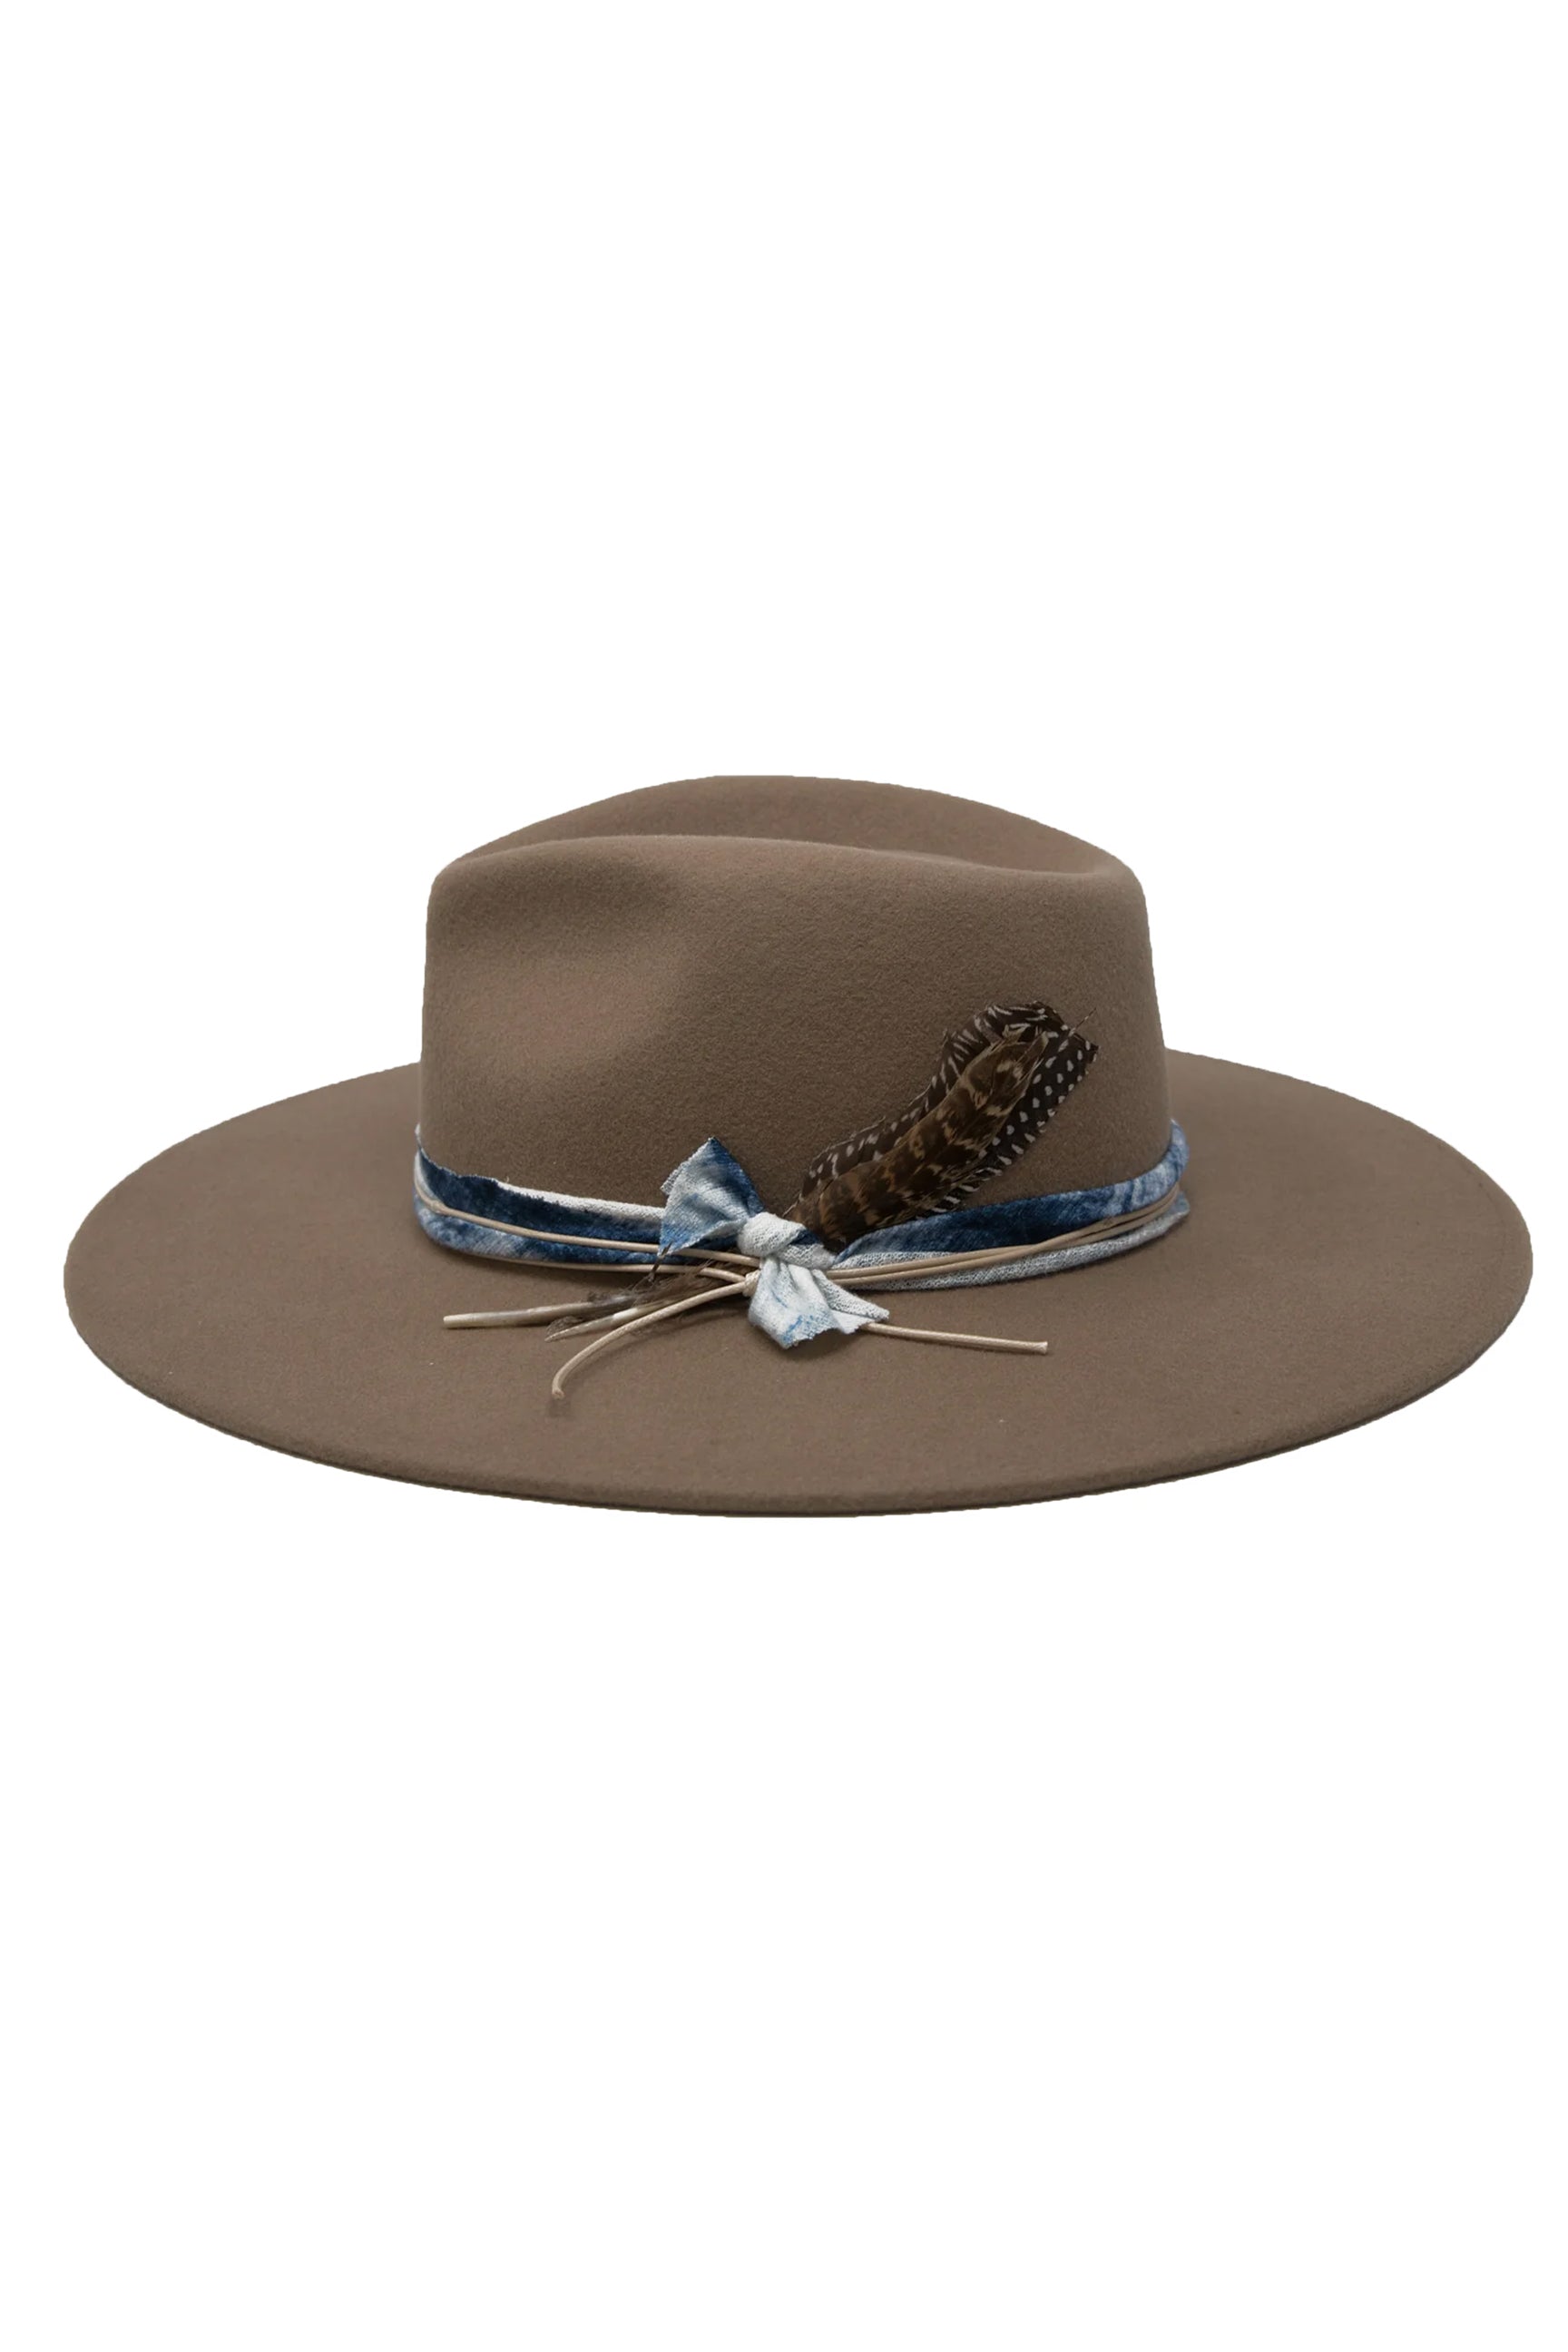 Wyeth Amelia Hat - Tan